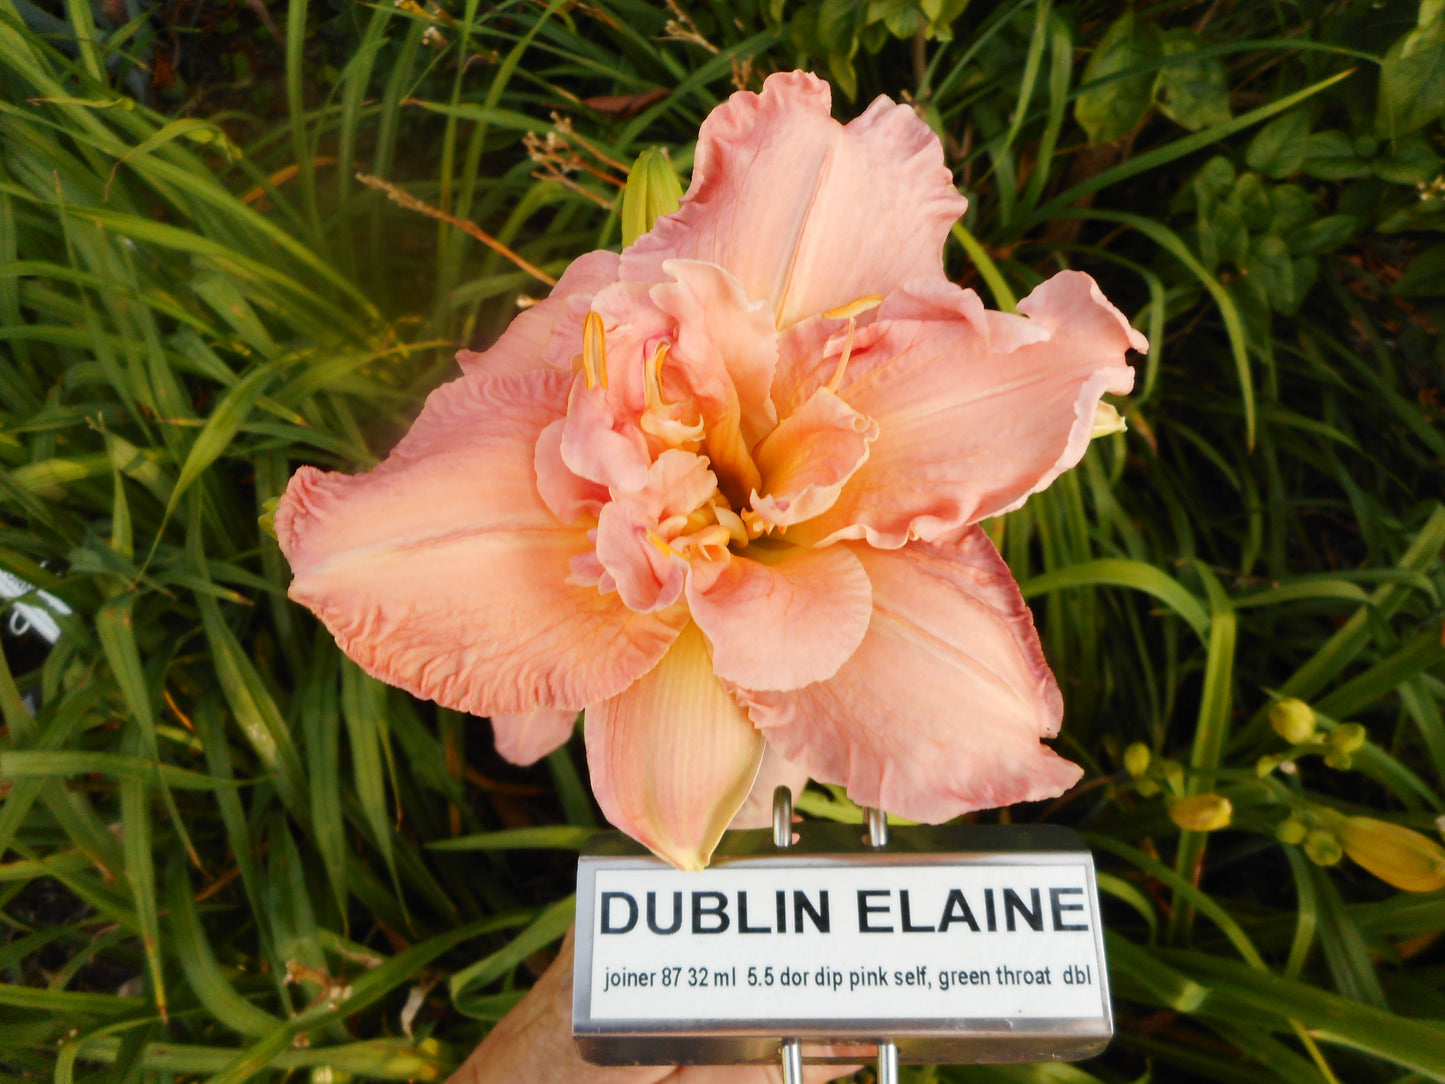 DUBLIN ELAINE